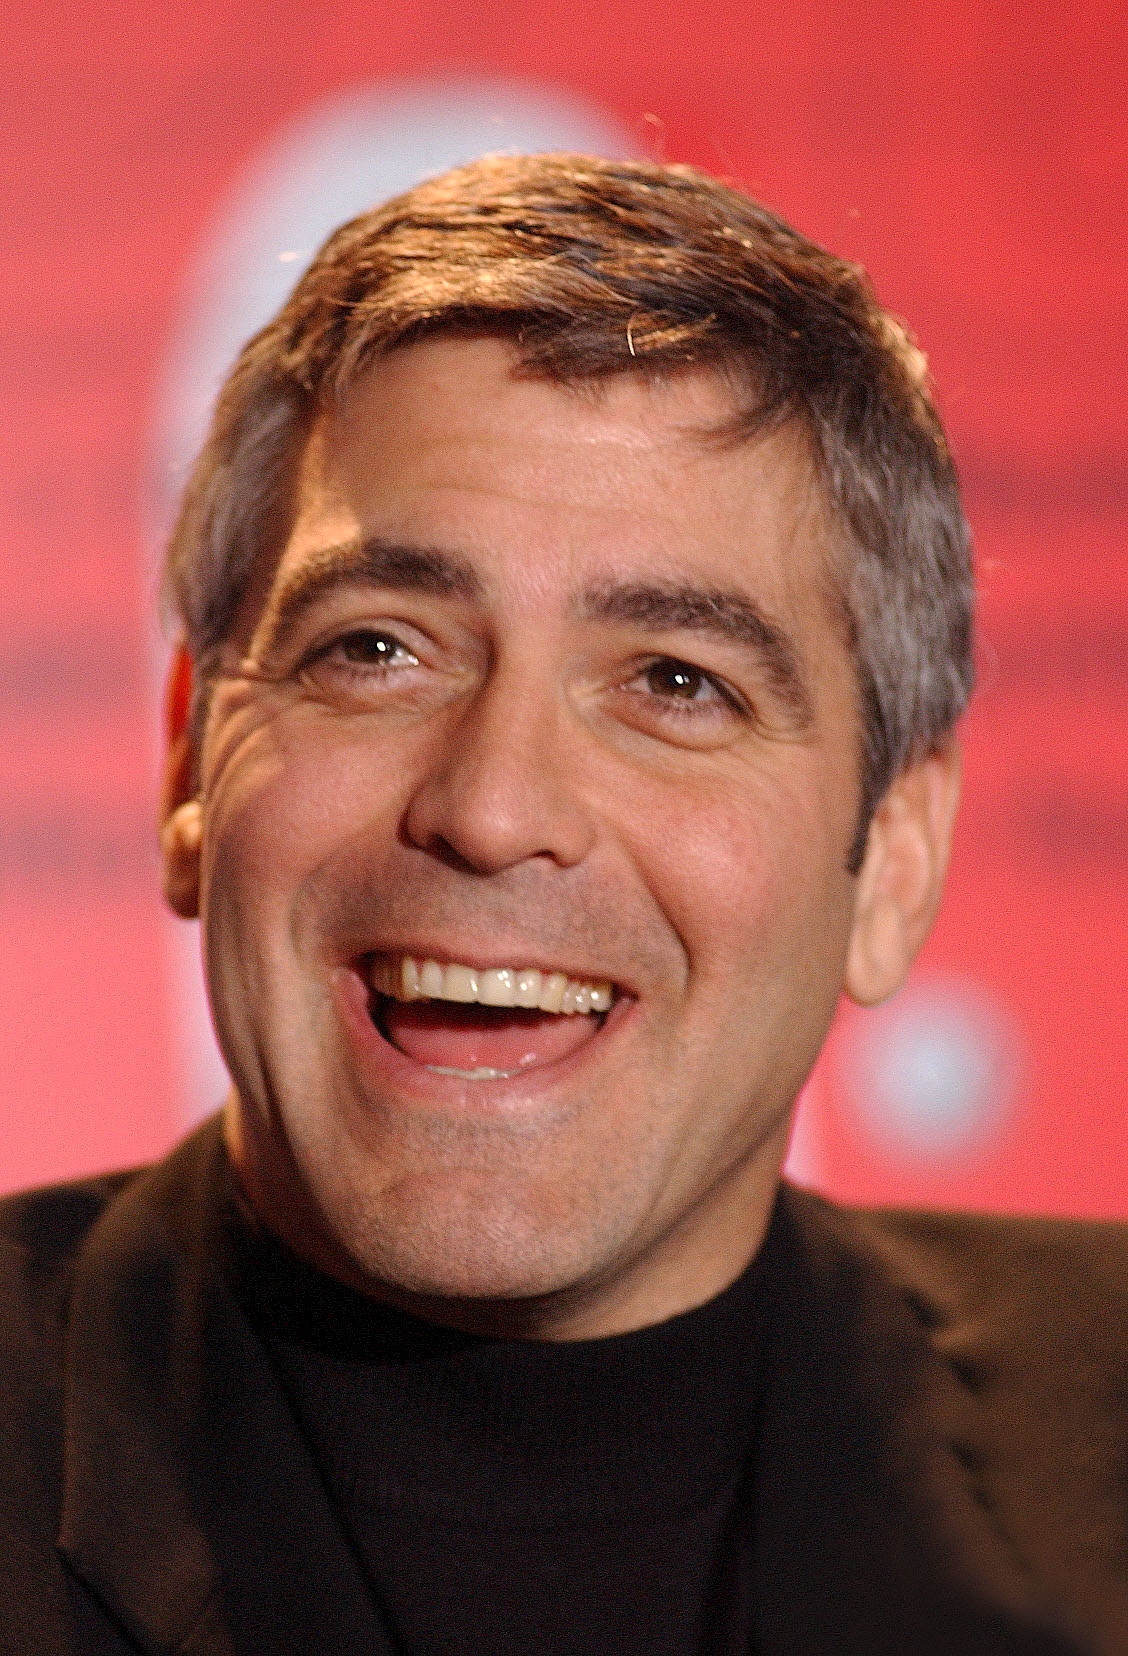 George Clooney auf einem Foto in Berlin, Deutschland, am 8. Februar 2003. | Quelle: Getty Images